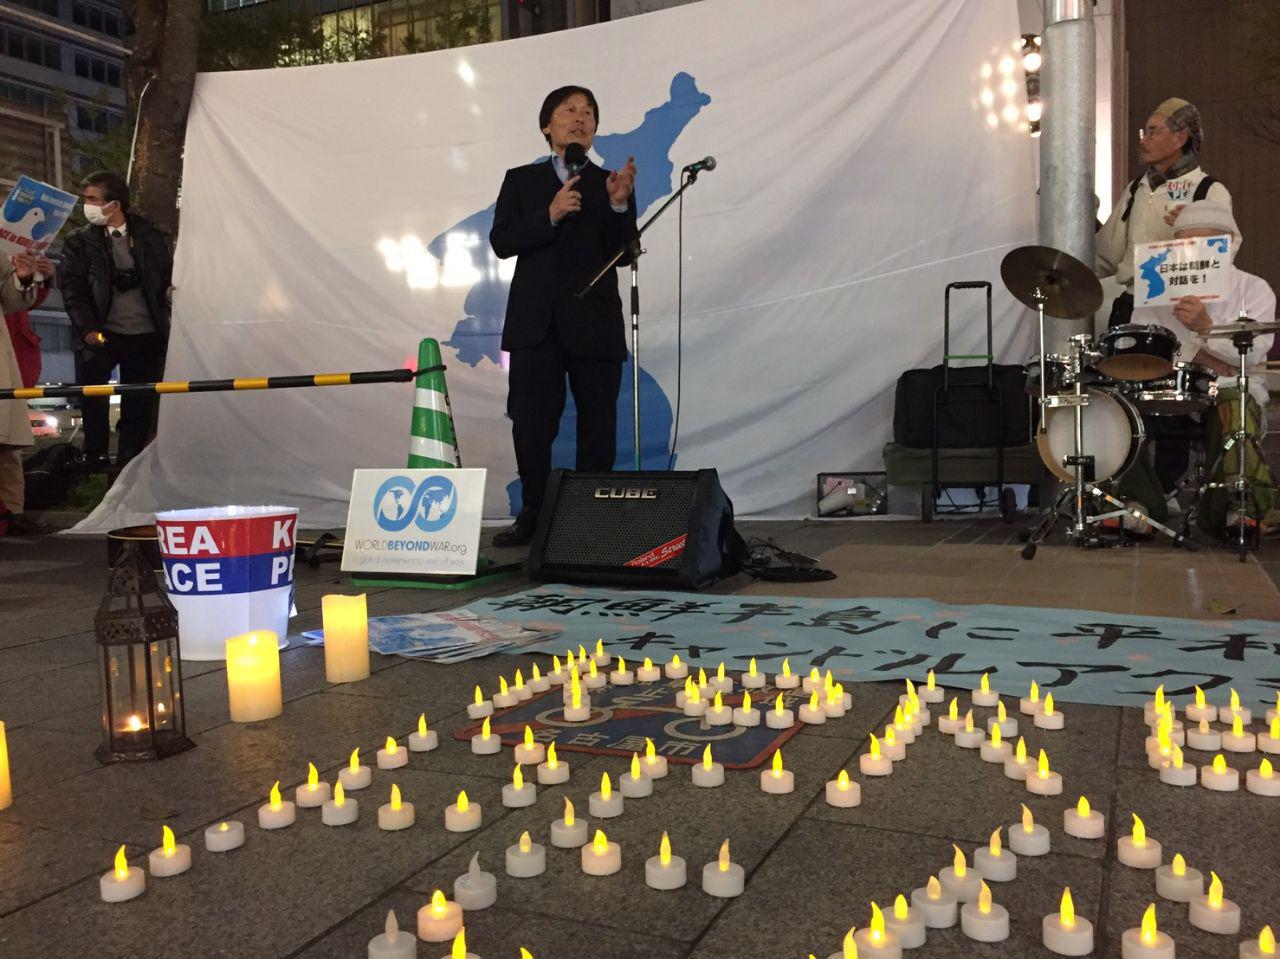 한반도 문제에 대한 아베 정권의 자세를 강하게 비판하고 있는 일본인 참가자